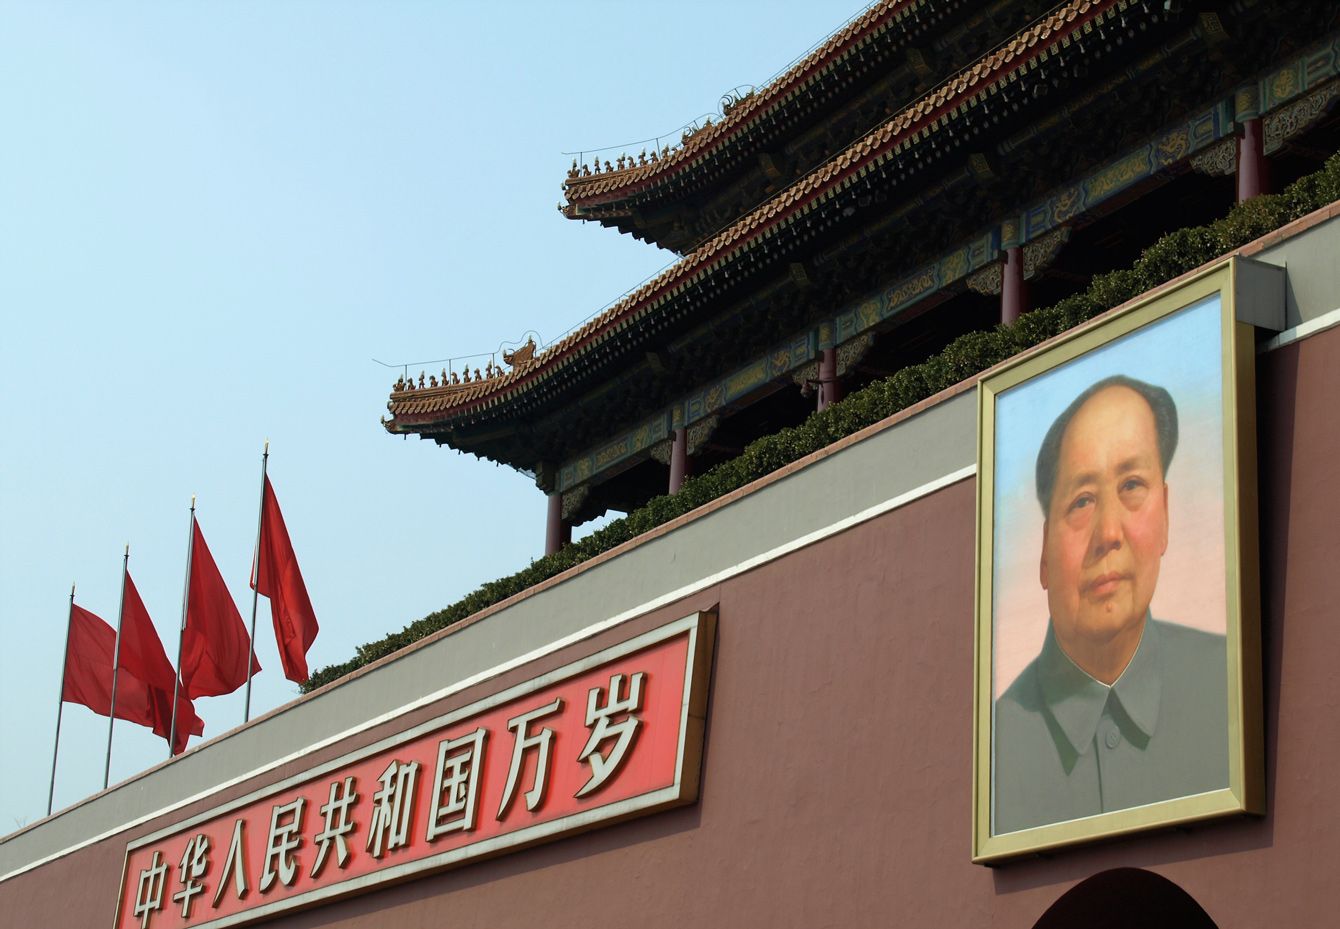 習近平指導部は中華人民共和国を｢自分たちの所有物｣と考えている